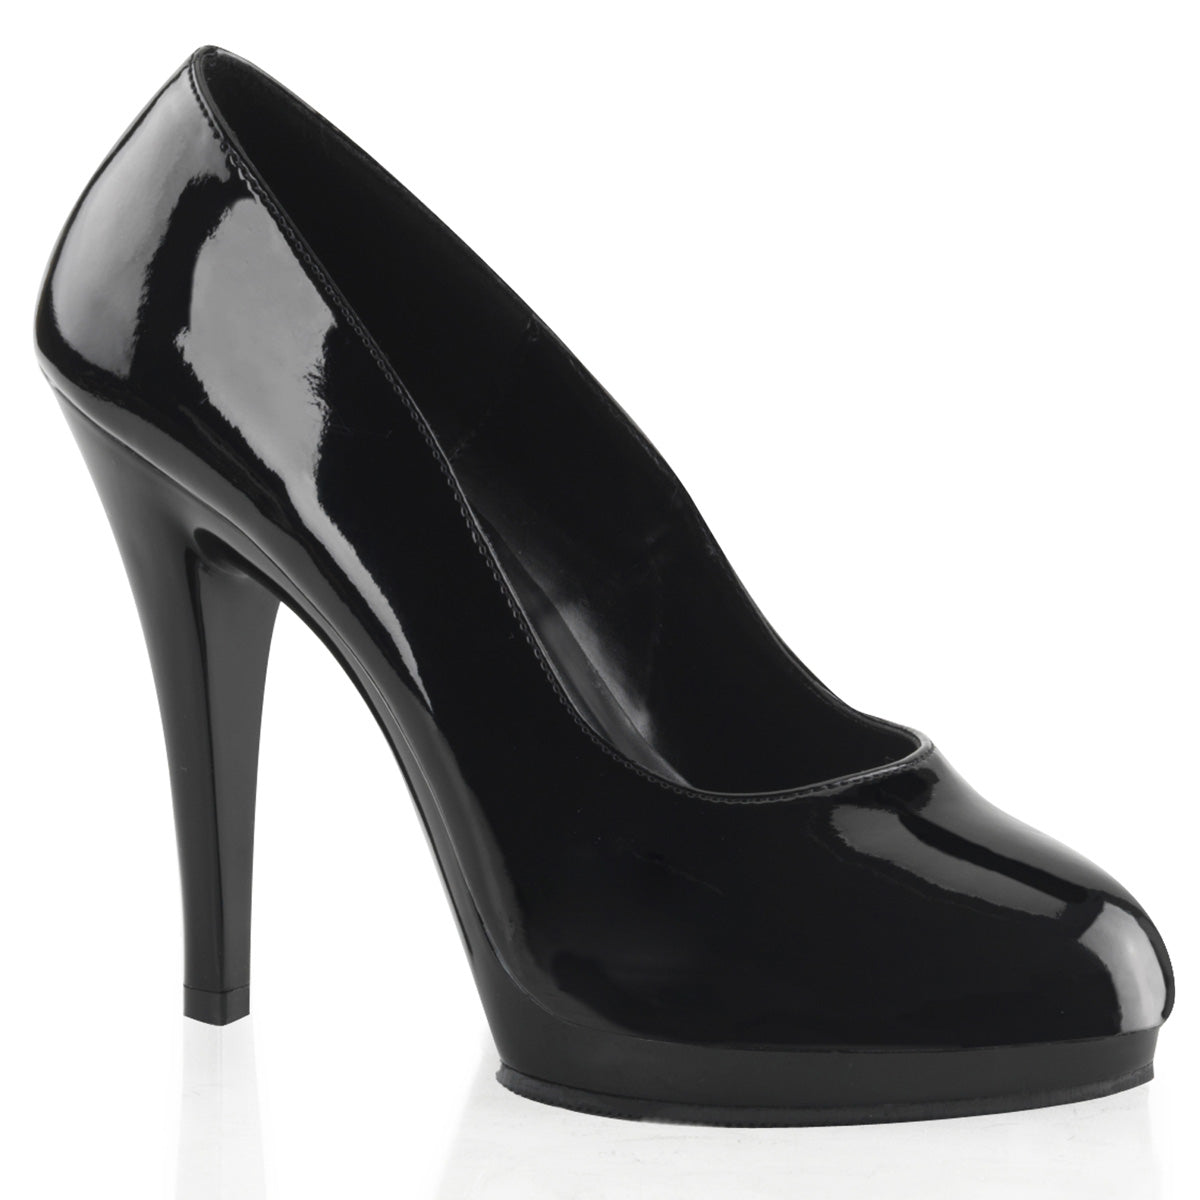 FLAIR-480 Pleaser Large Size Ladies Shoes 4.5" Heel Black Platform Shoes